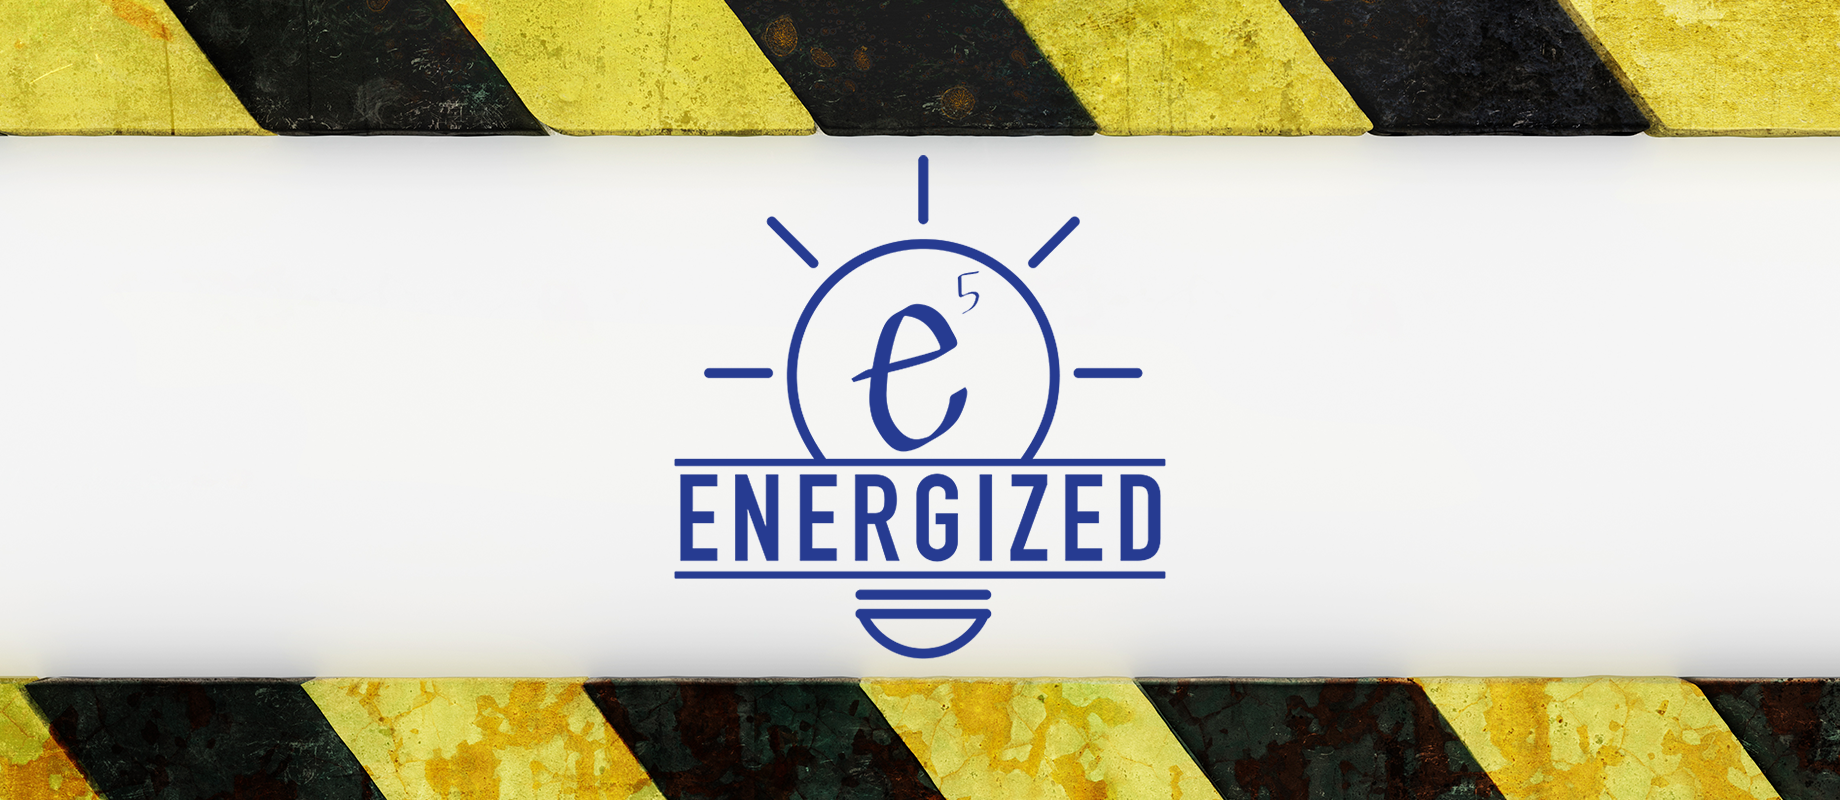 e5 energized 